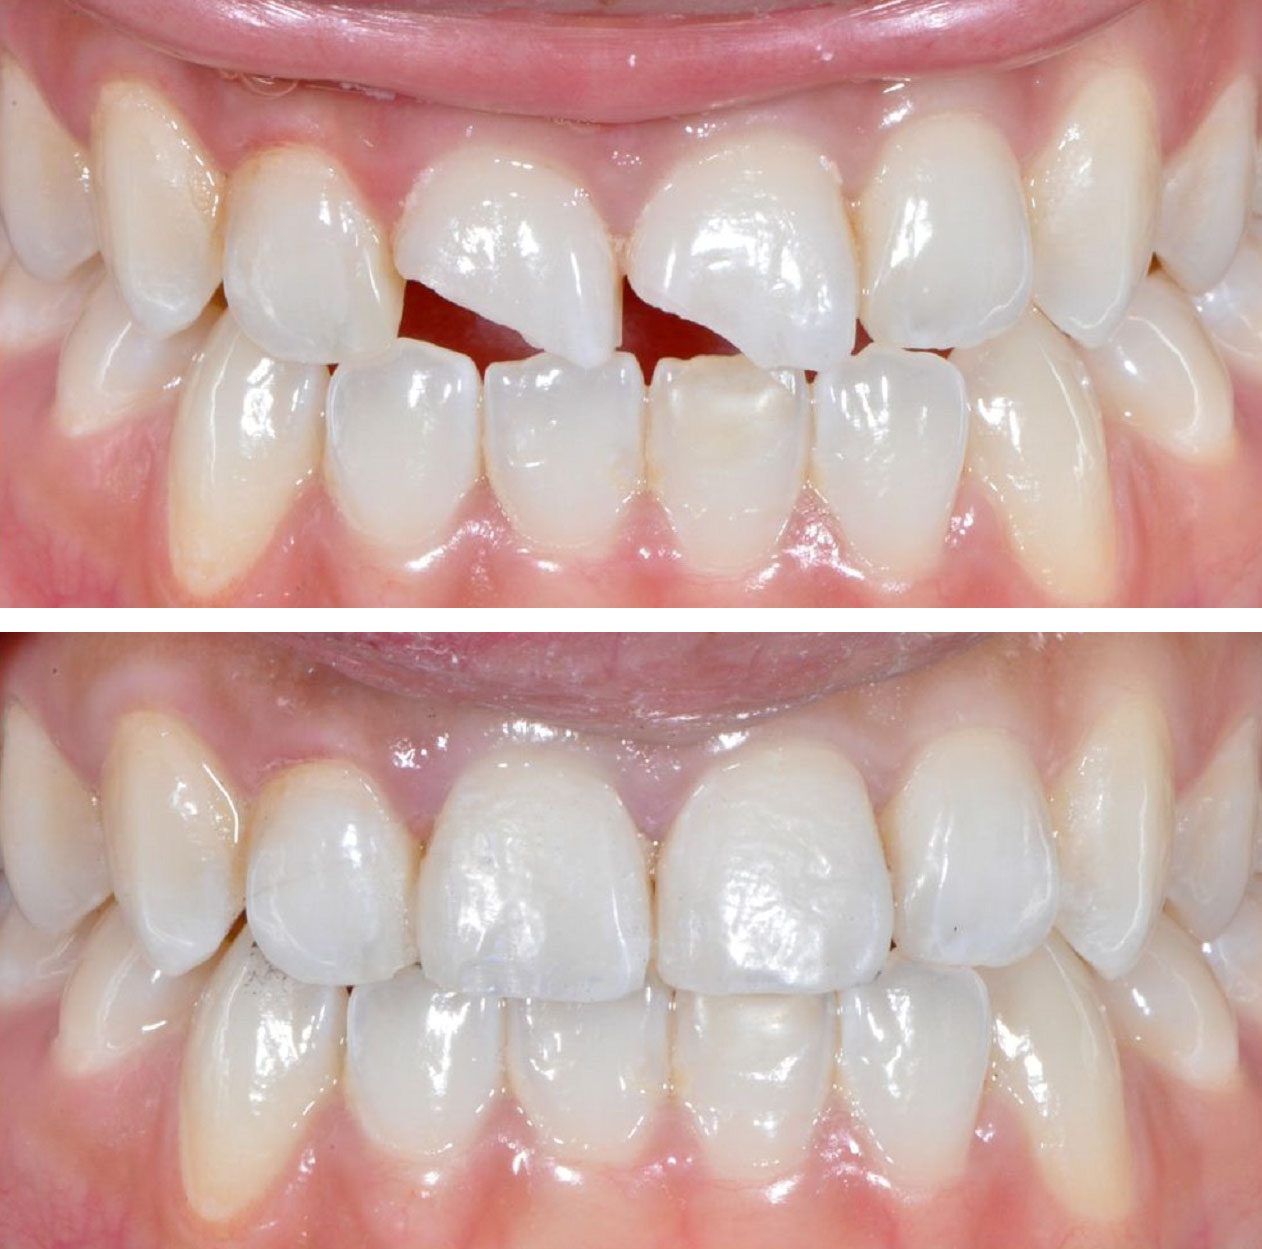 Фото: возможности художественной реставрации зубов позволяют скрыть даже сильные дефекты